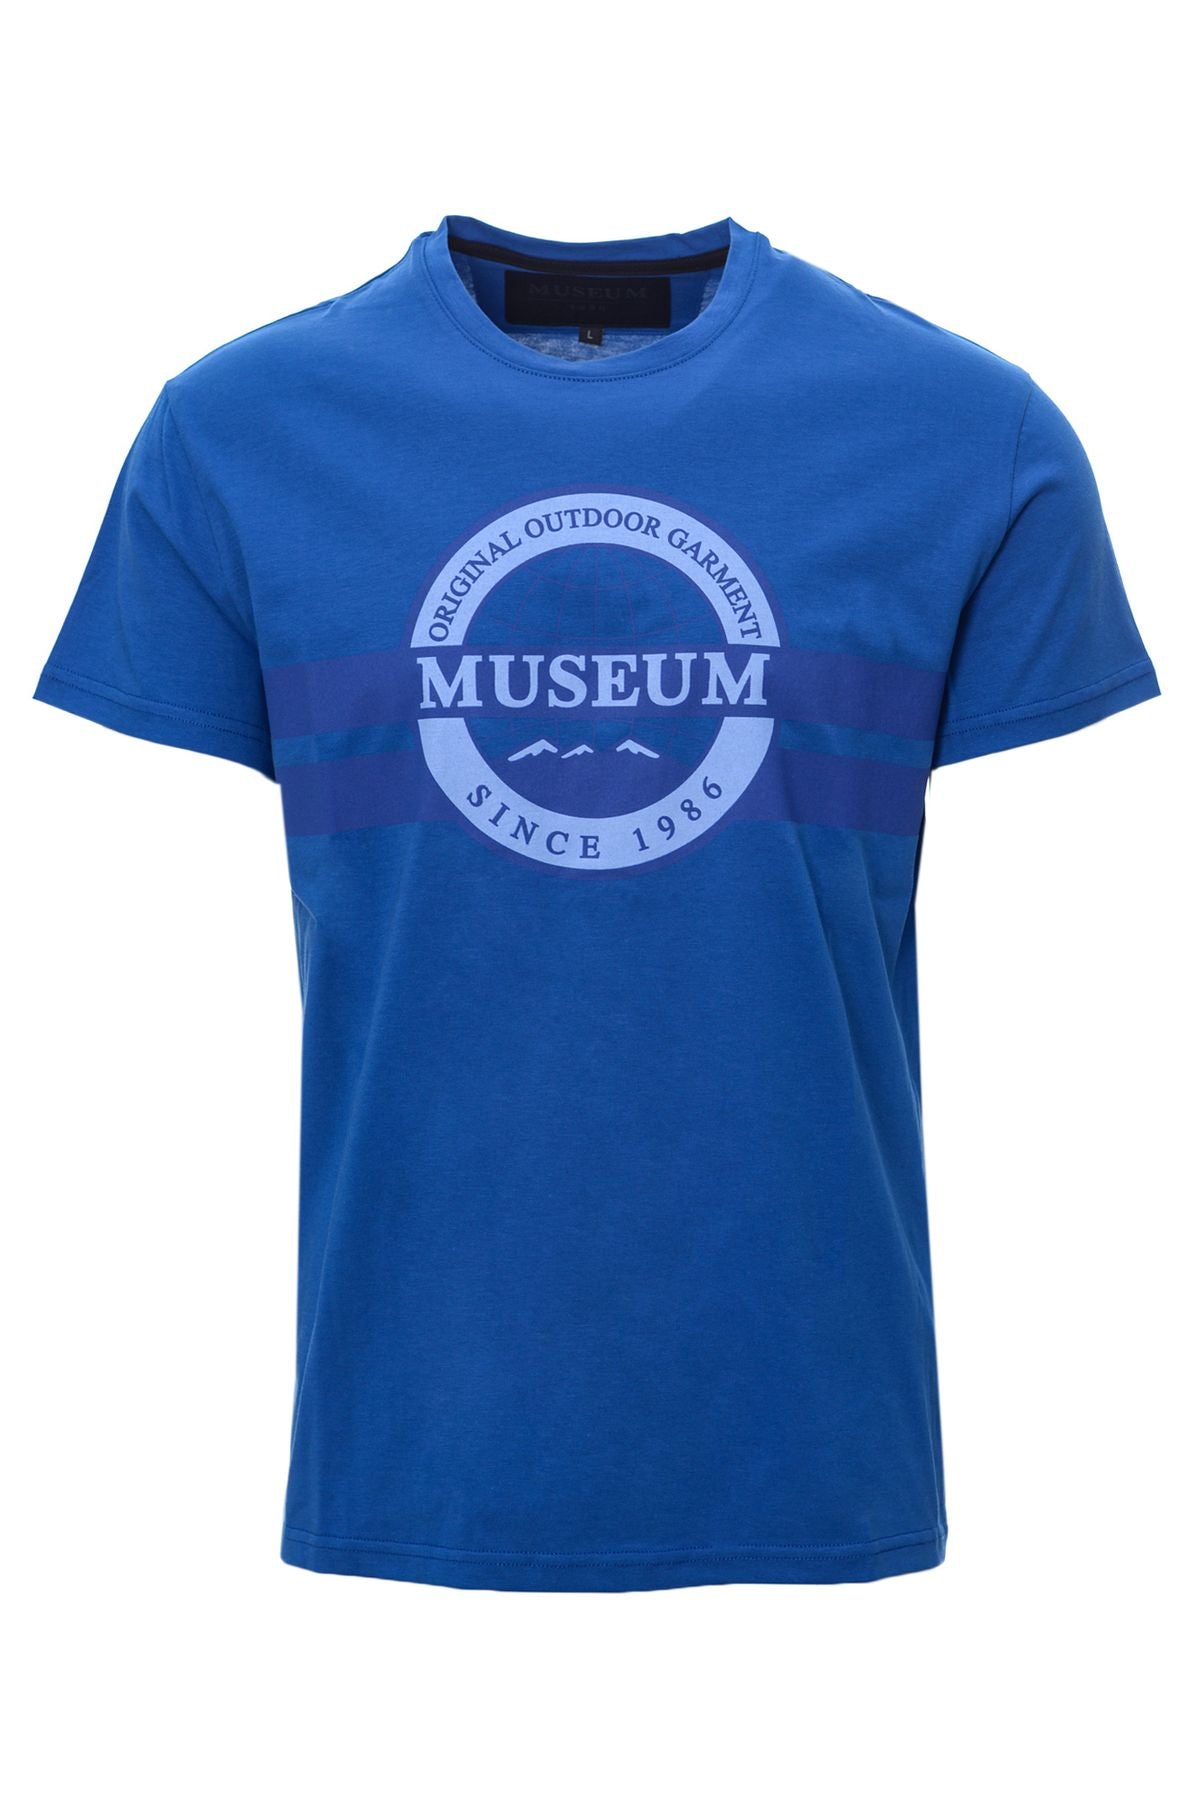 MUSEUM Spring/Summer Cotton T-shirt